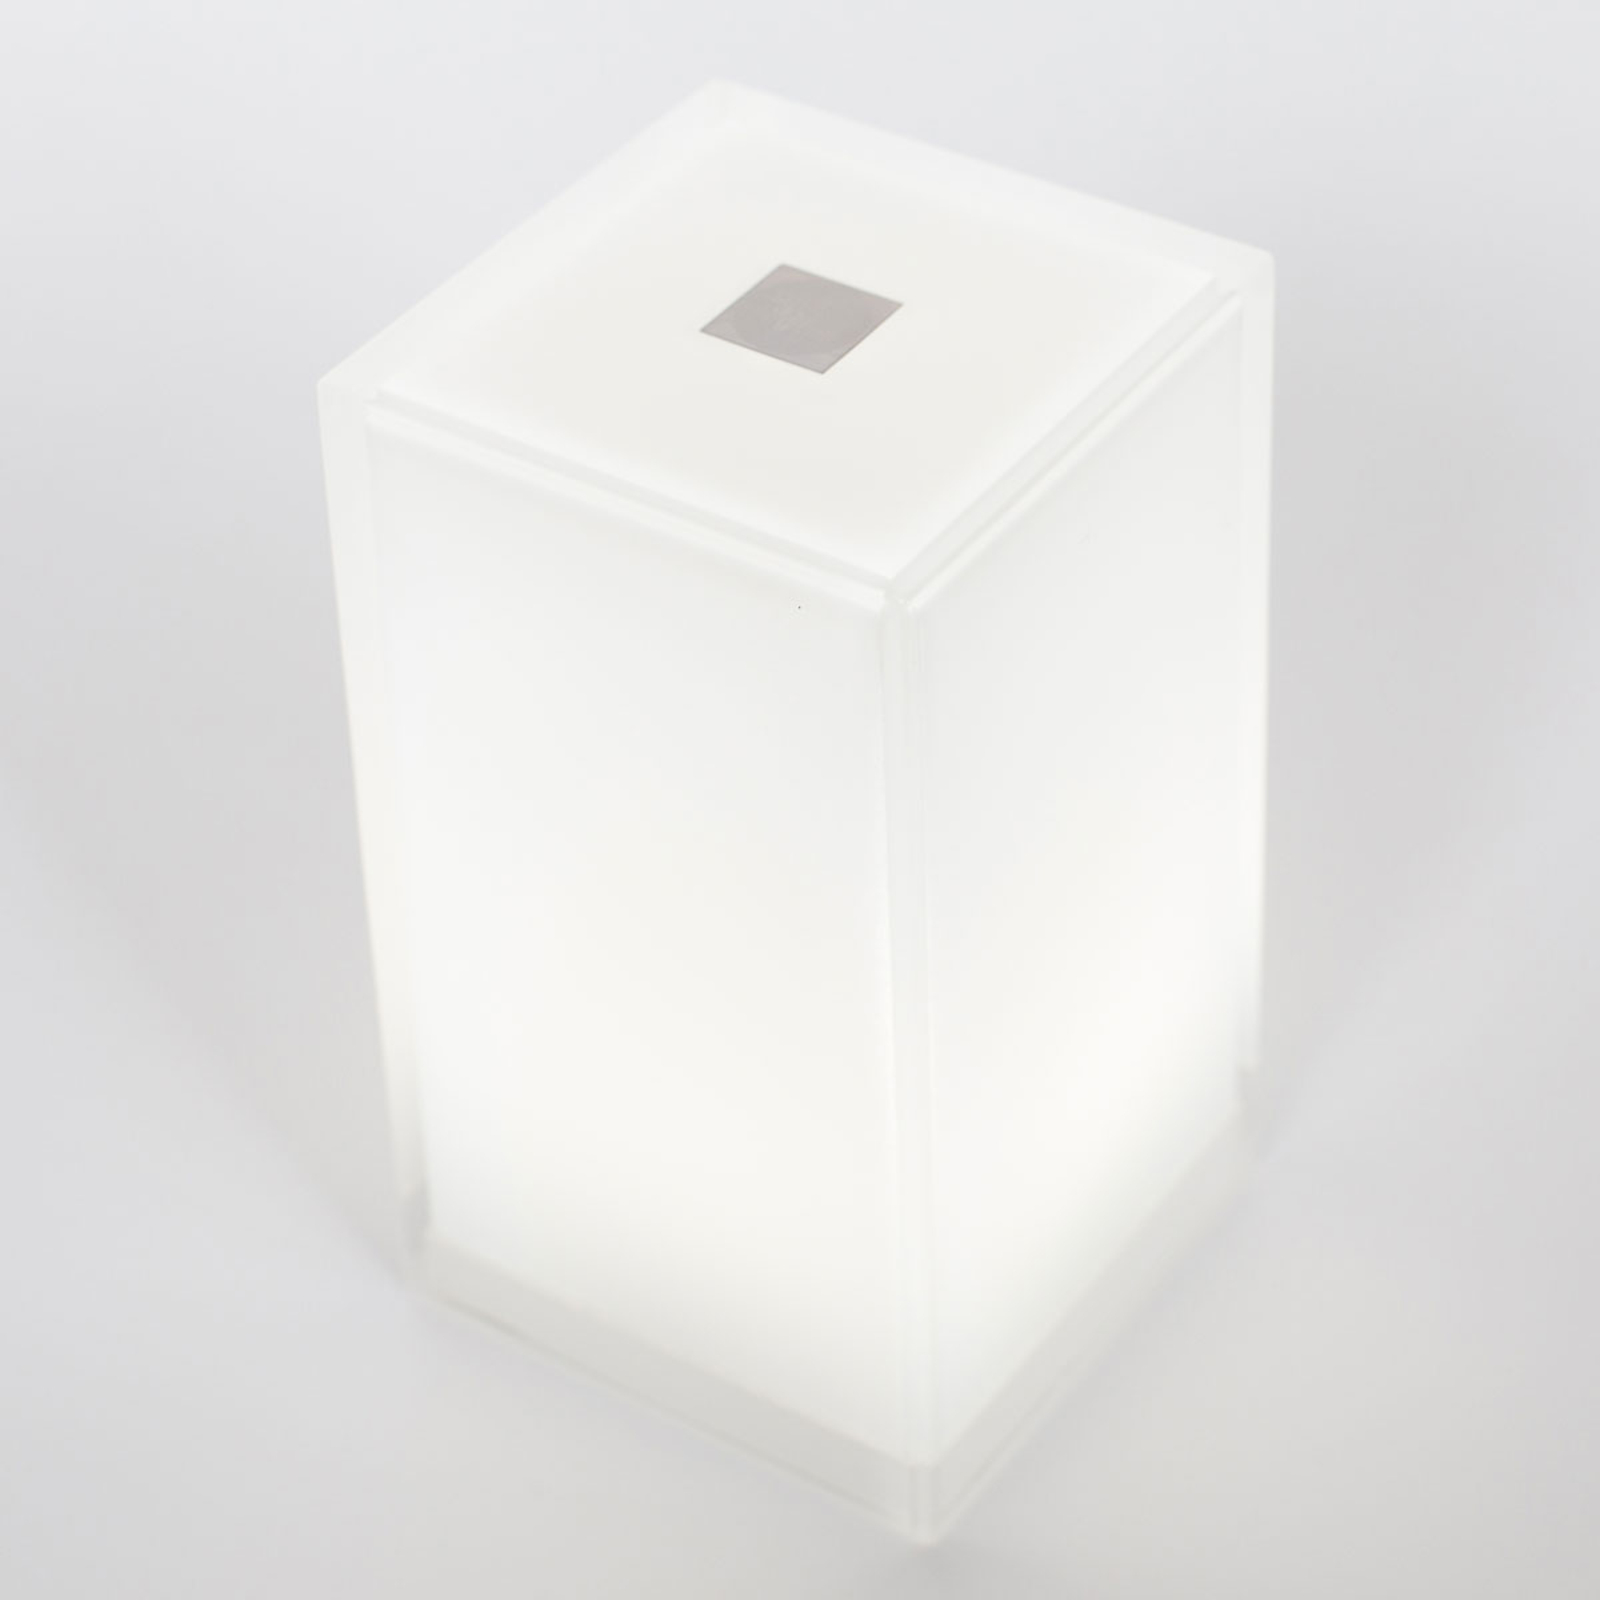 Stolná lampa Cub v balení po 6 ks, ovládaná aplikáciou, RGBW